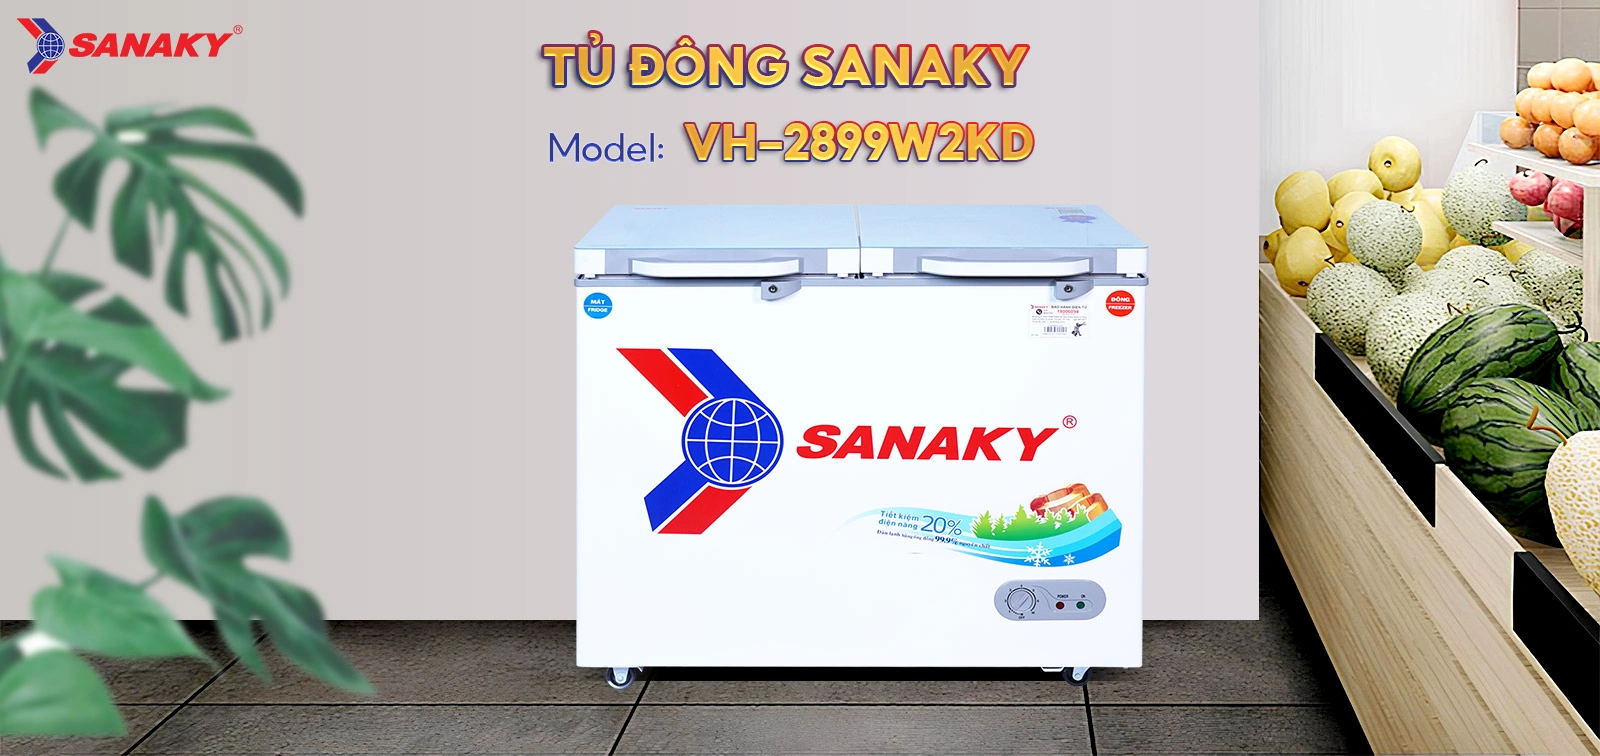 Tủ Đông Sanaky VH-2899W2KD